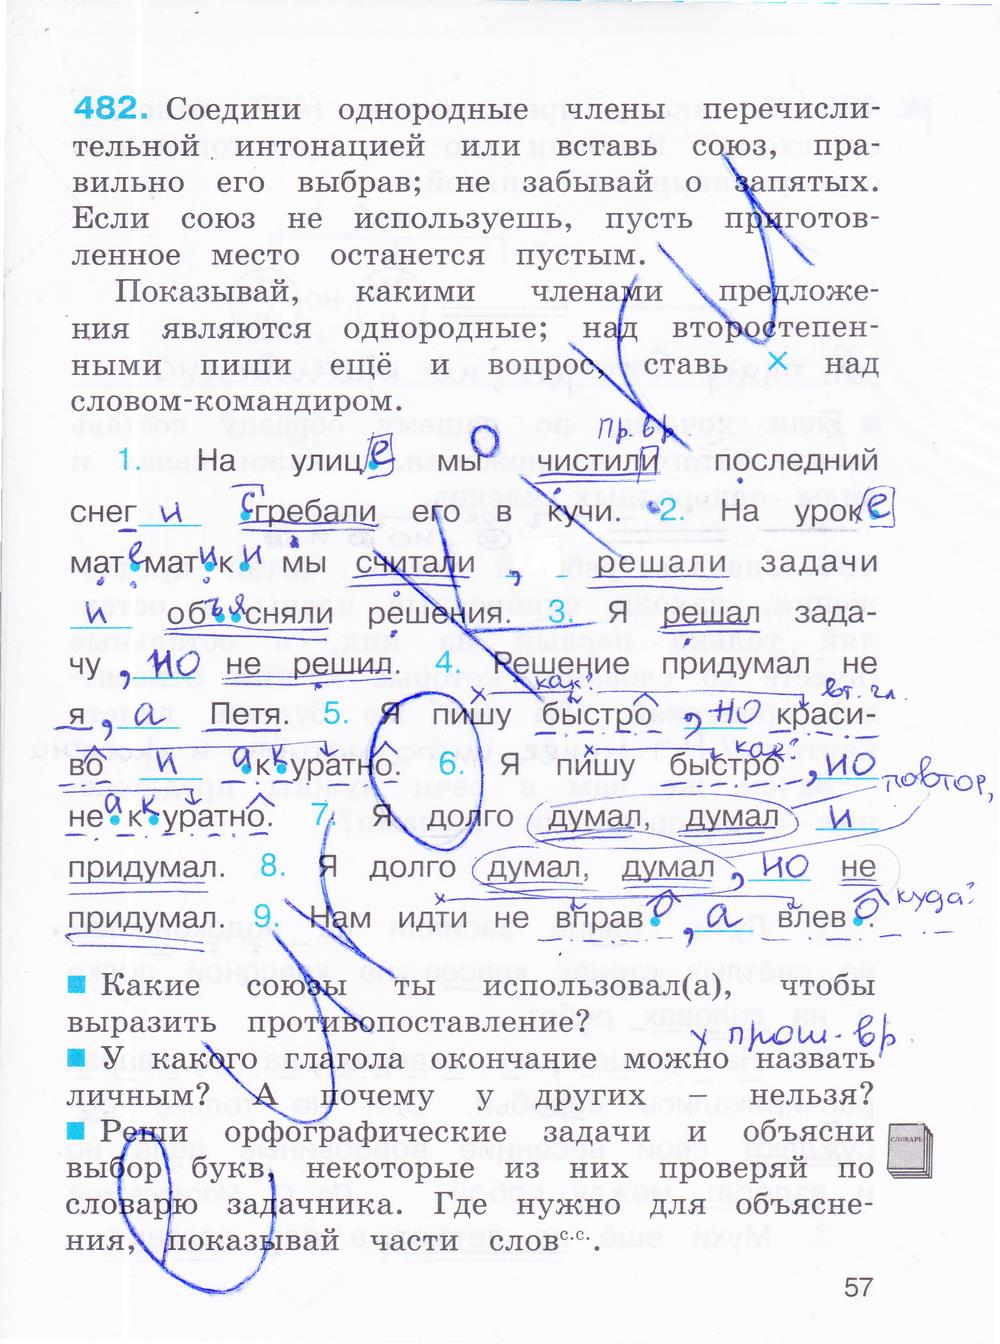 гдз 4 класс рабочая тетрадь часть 2 страница 57 русский язык Соловейчик, Кузьменко